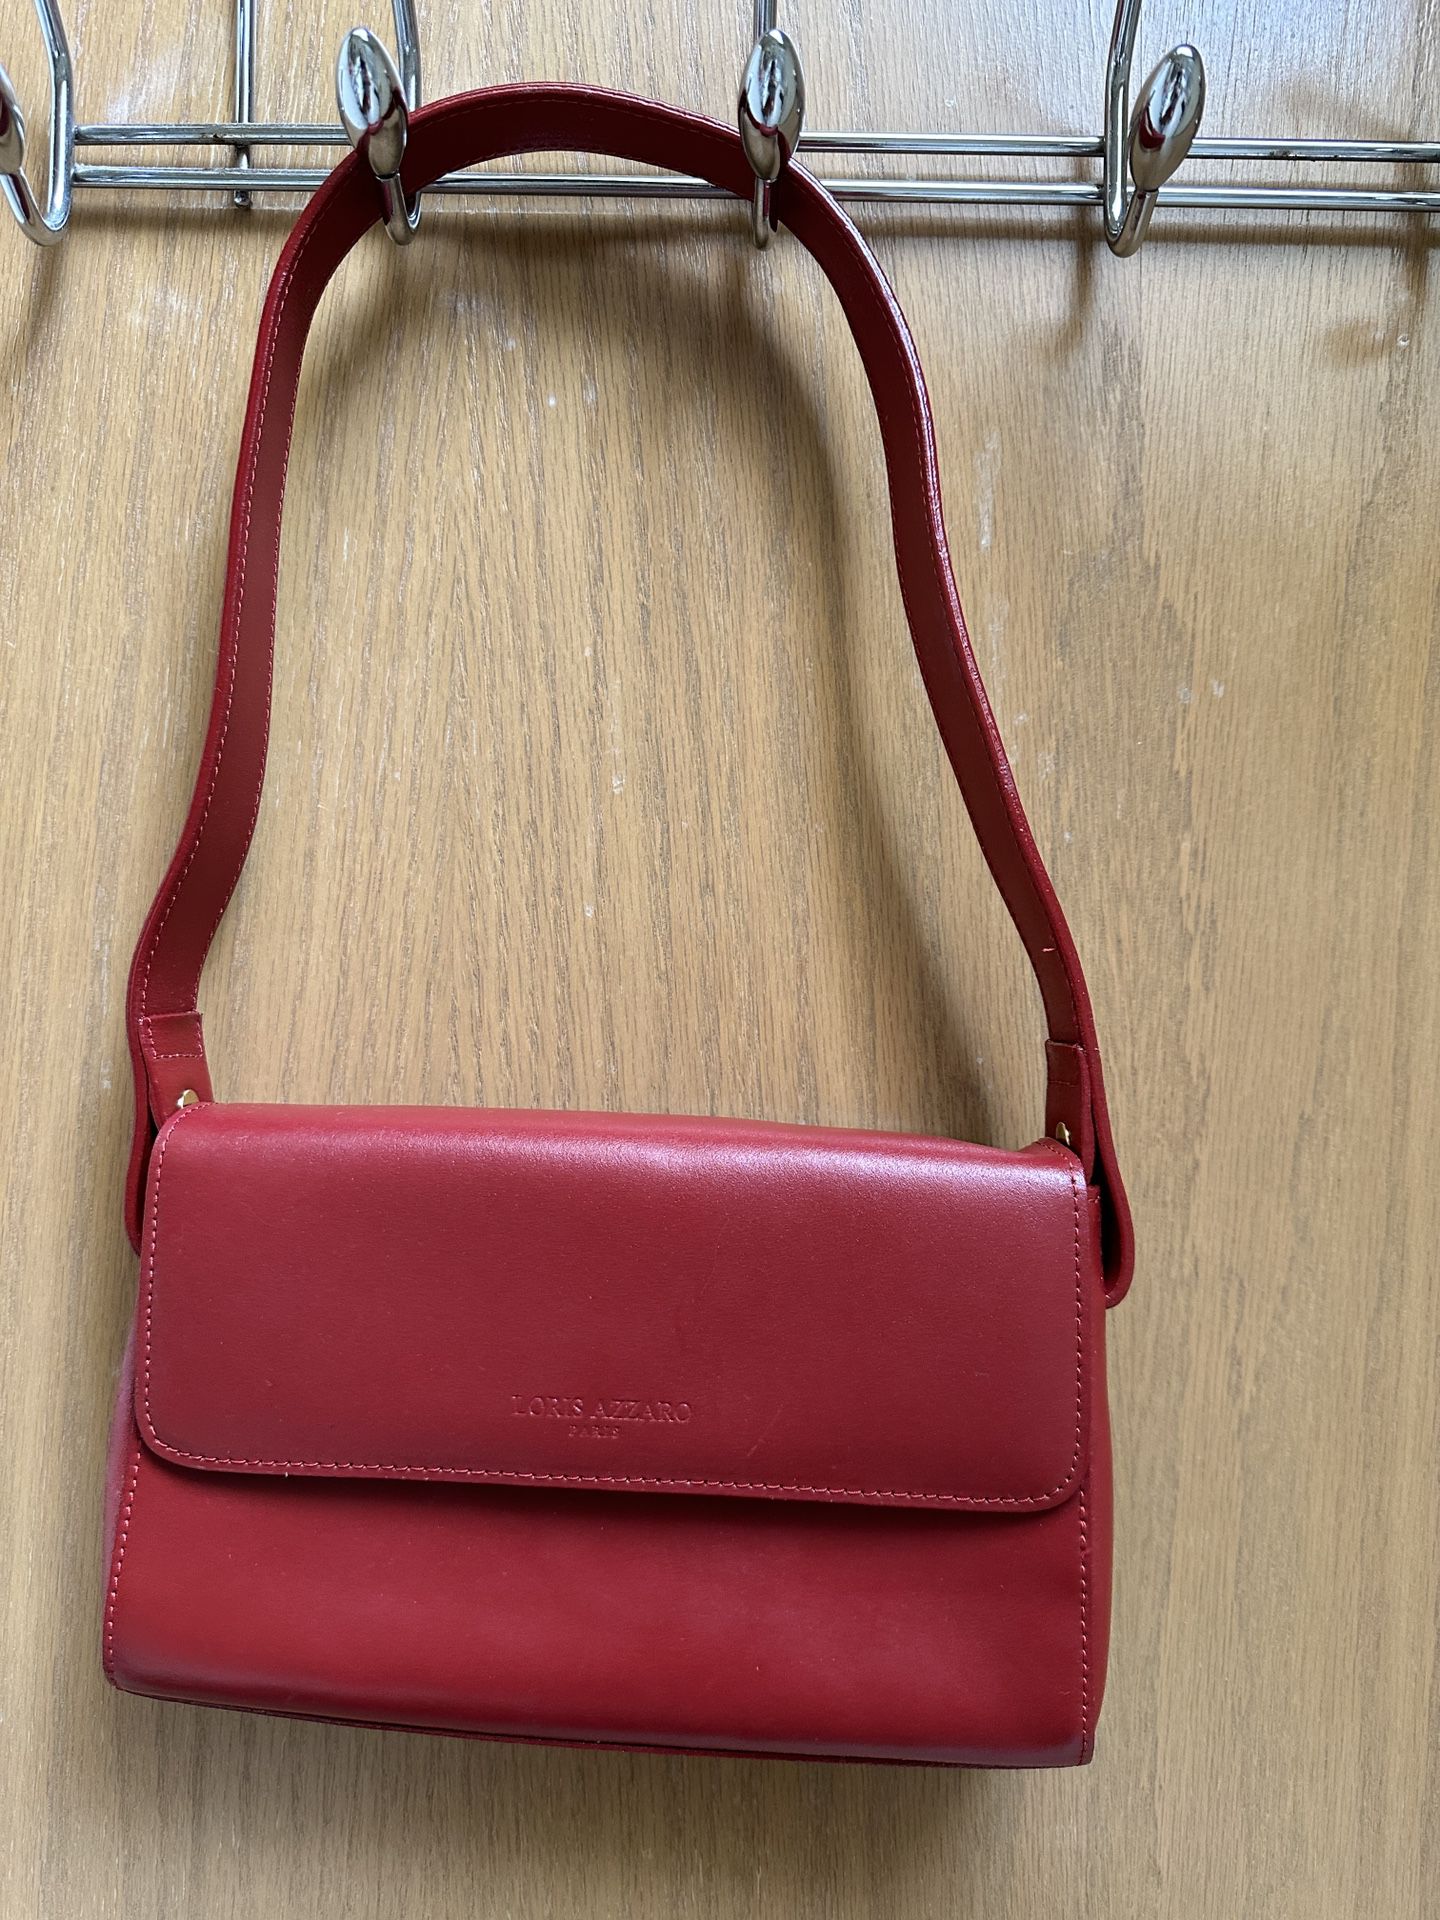 Loris Azzaro Handbag Brand New